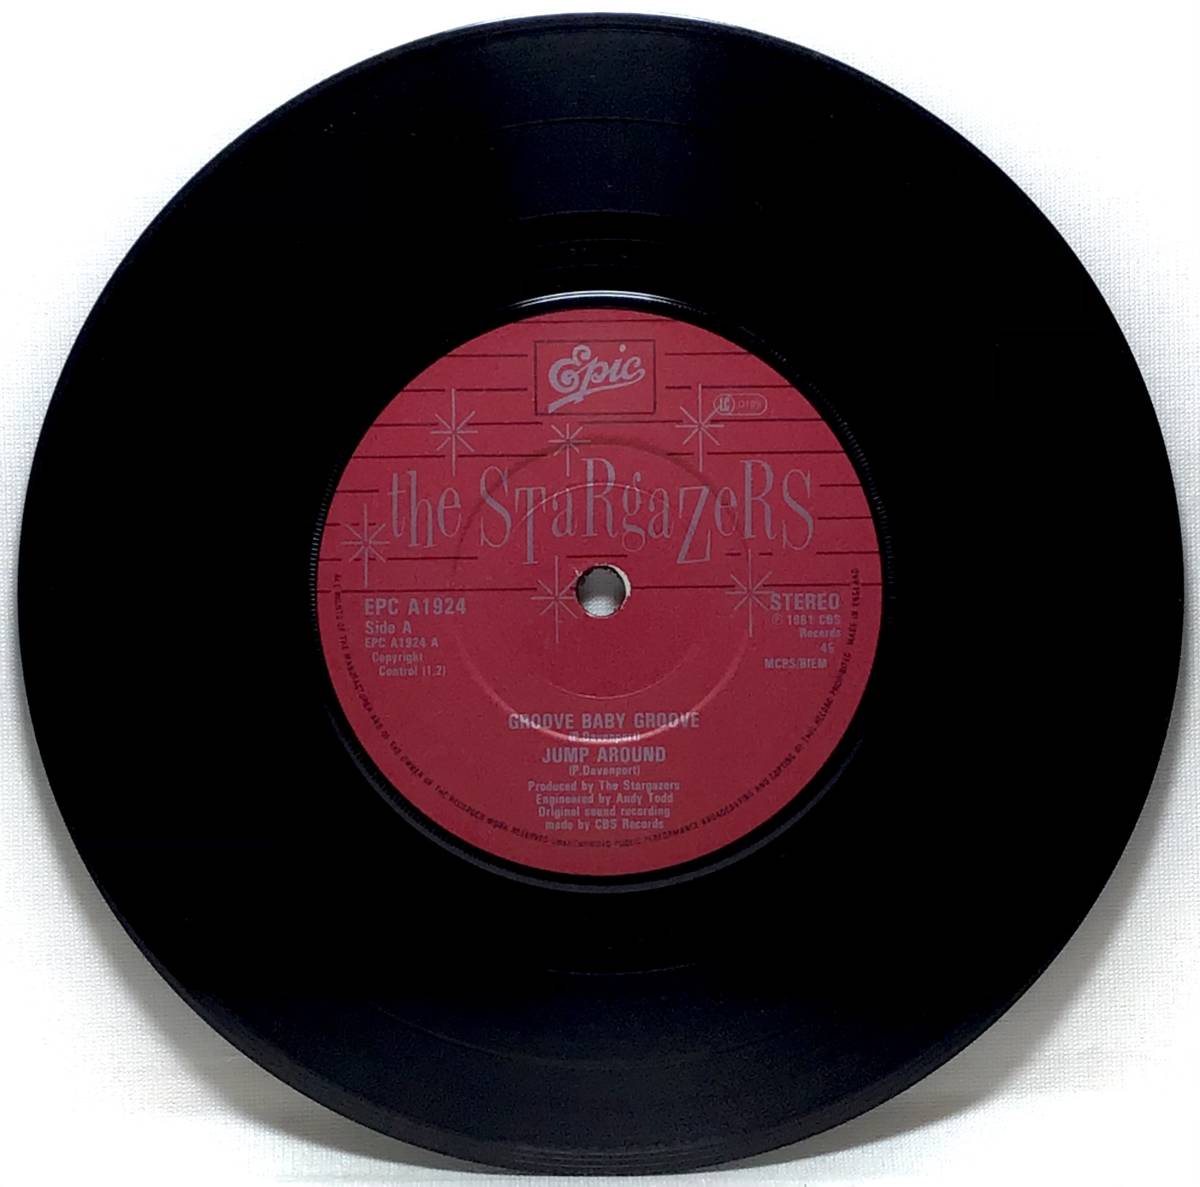 【英7】 THE STARGAZERS / GROOVE BABY GROOVE / JUMP AROUND / 1981 UK盤 4曲入り 7インチシングルレコード EP 45 ロカビリー ネオロカ_画像3